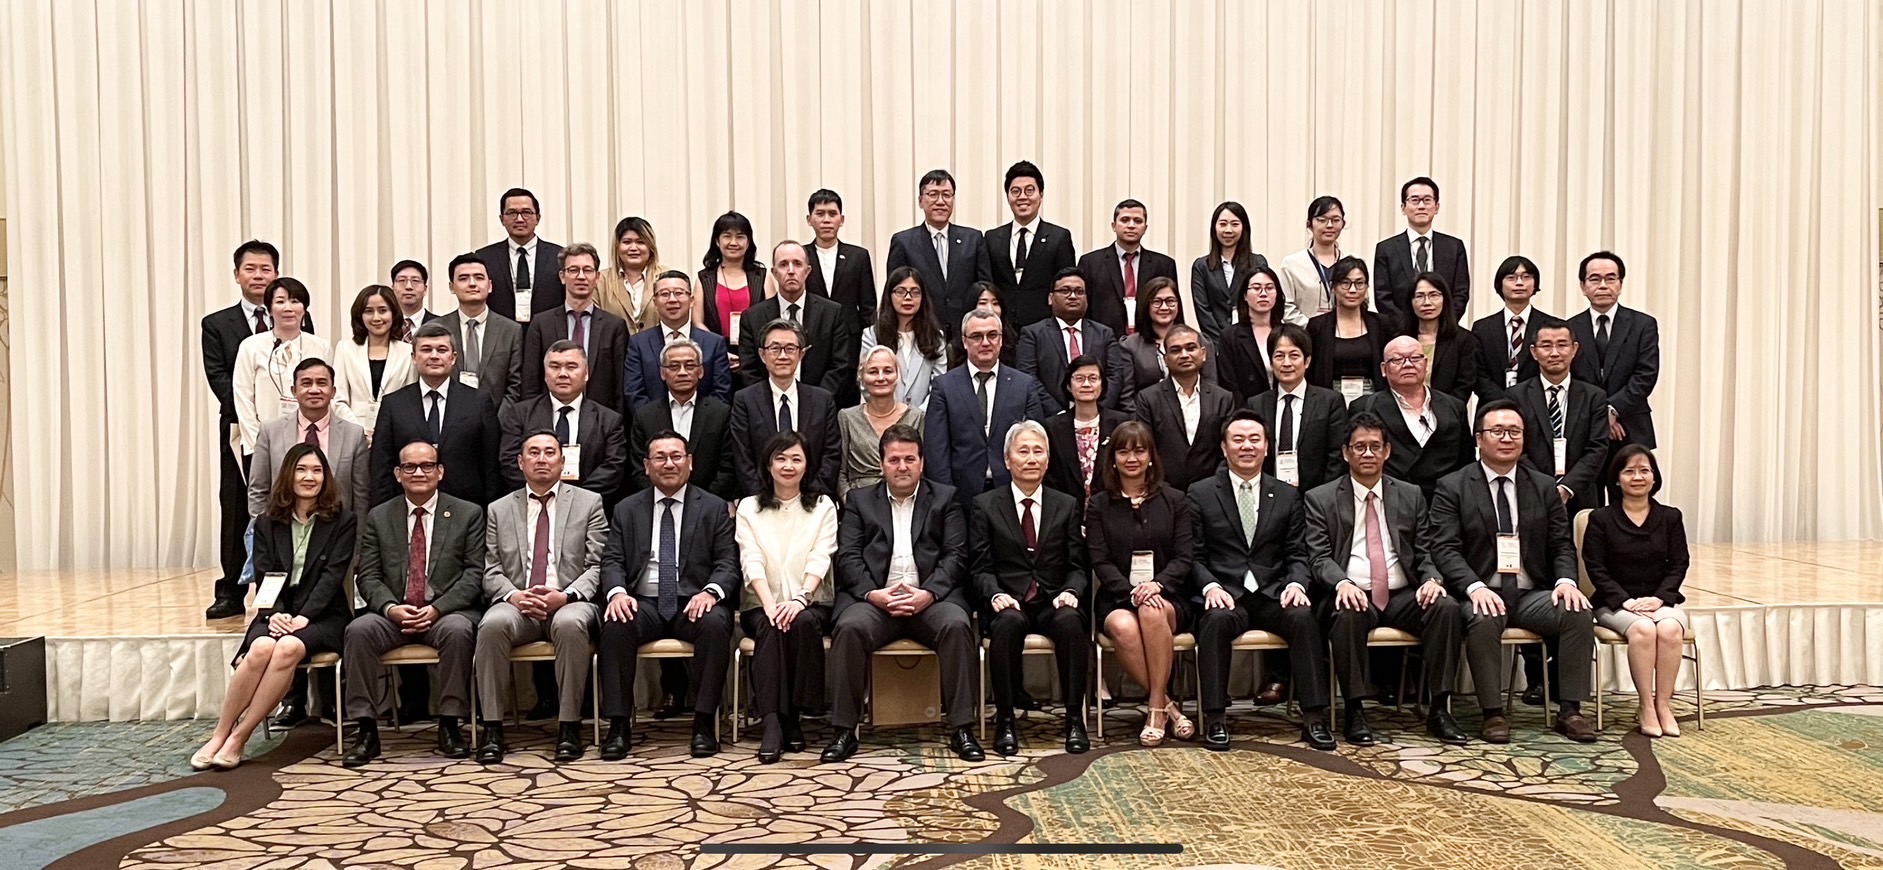 本公司副總經理范以端於112年5月下旬率員赴日本福岡參加第21屆國際存款保險機構協會亞太區域委員會年會暨國際研討會